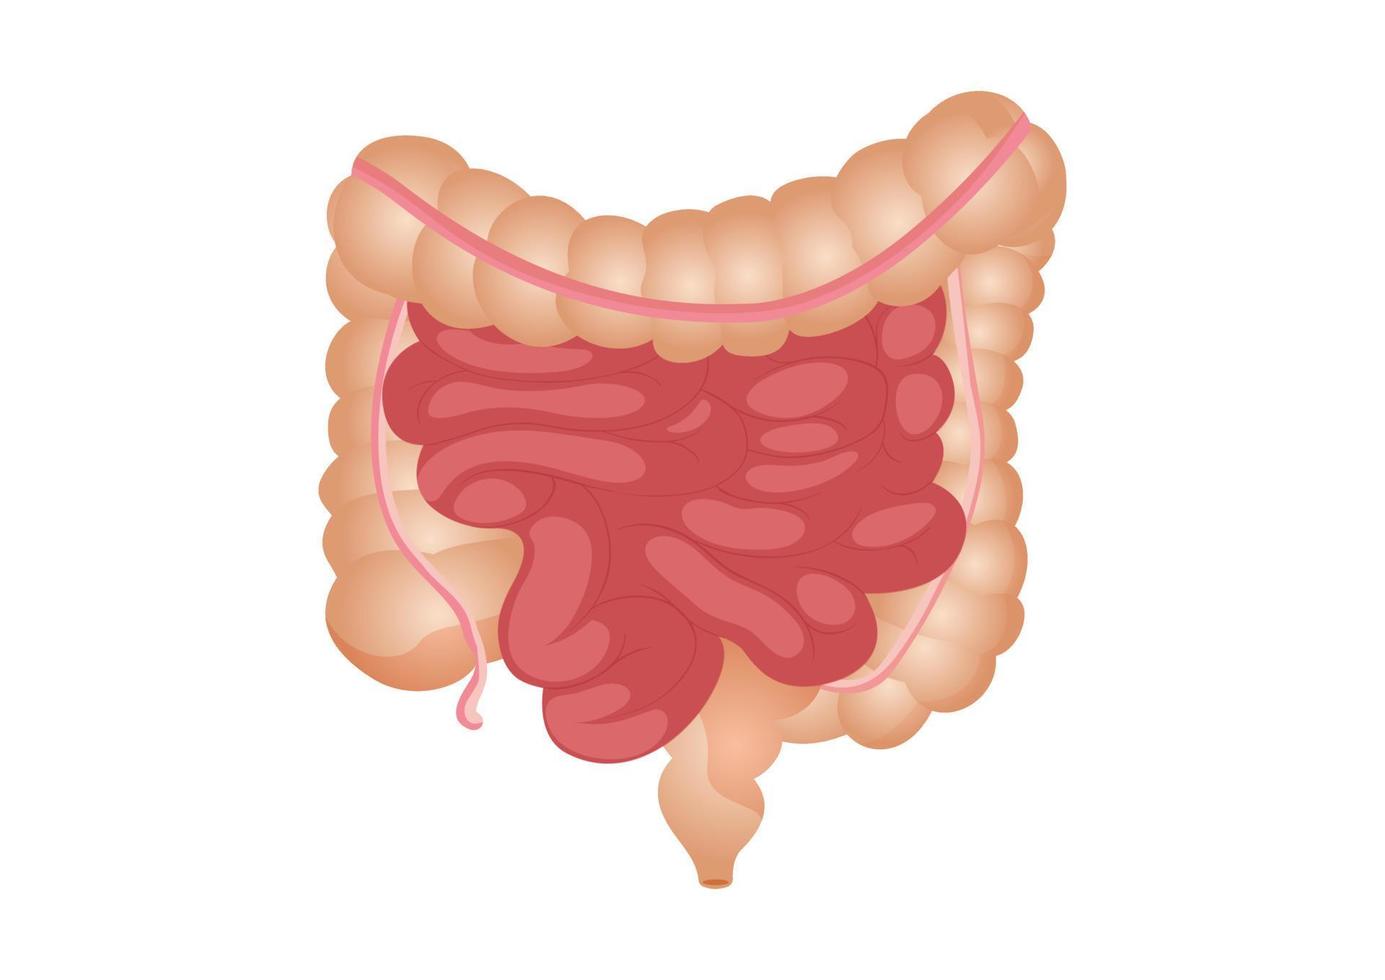 ilustração em vetor plana do intestino delgado e grosso. o órgão interno humano, o trato digestivo. ilustração em vetor de intestinos humanos isolados no fundo branco.